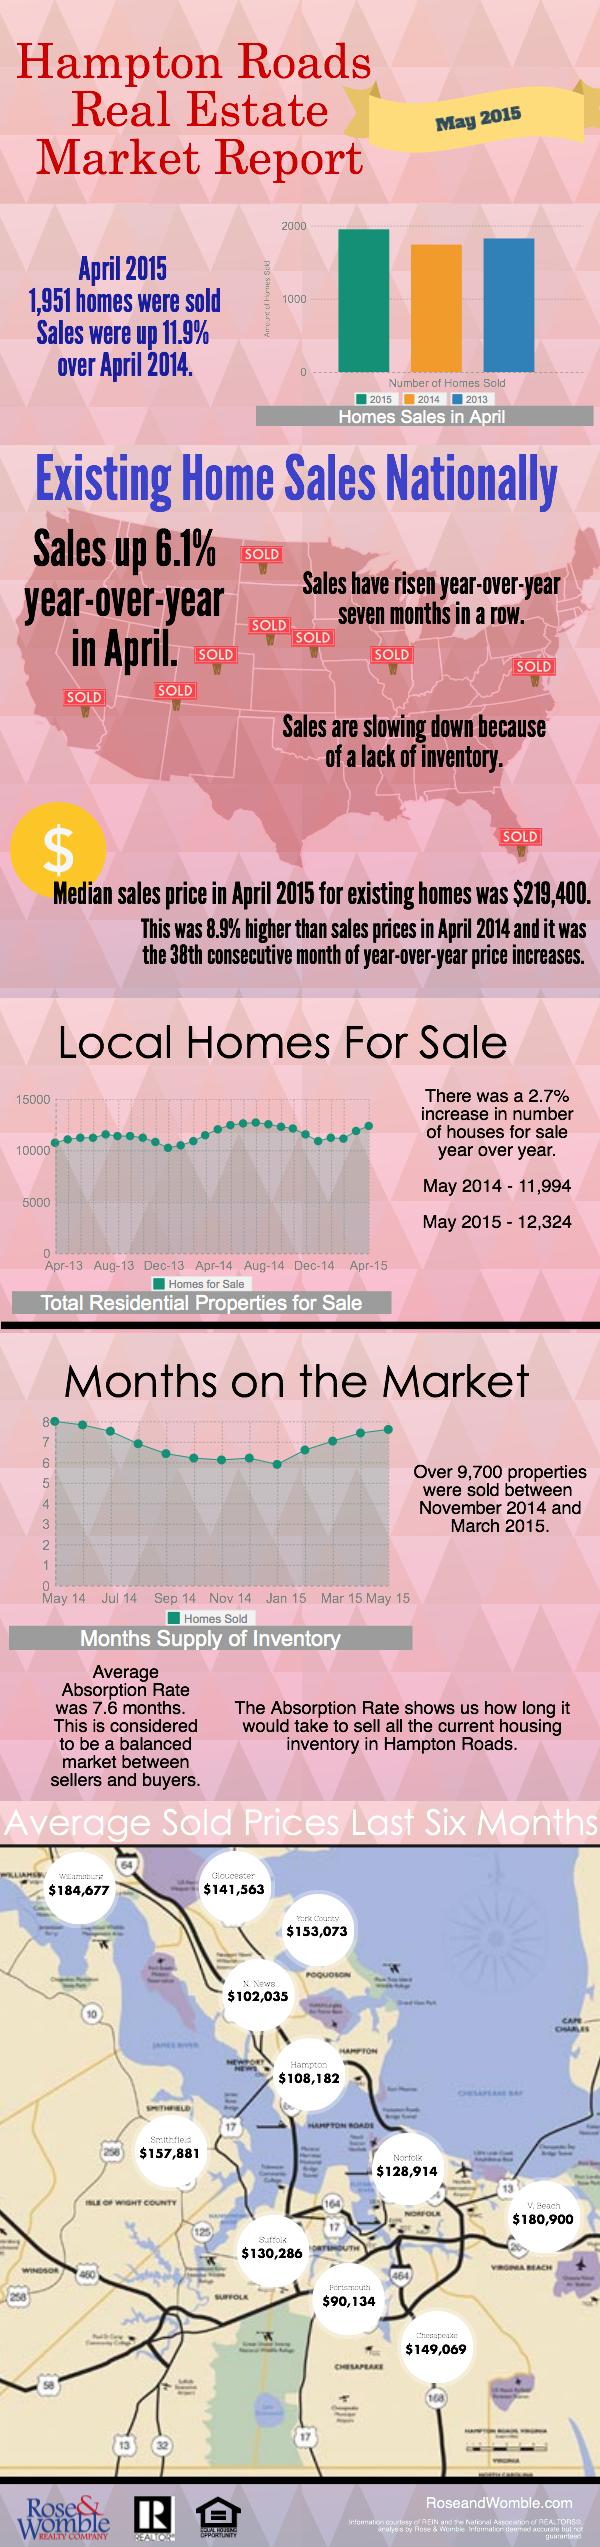 Hampton Roads Real Estate Market Report For May 2015